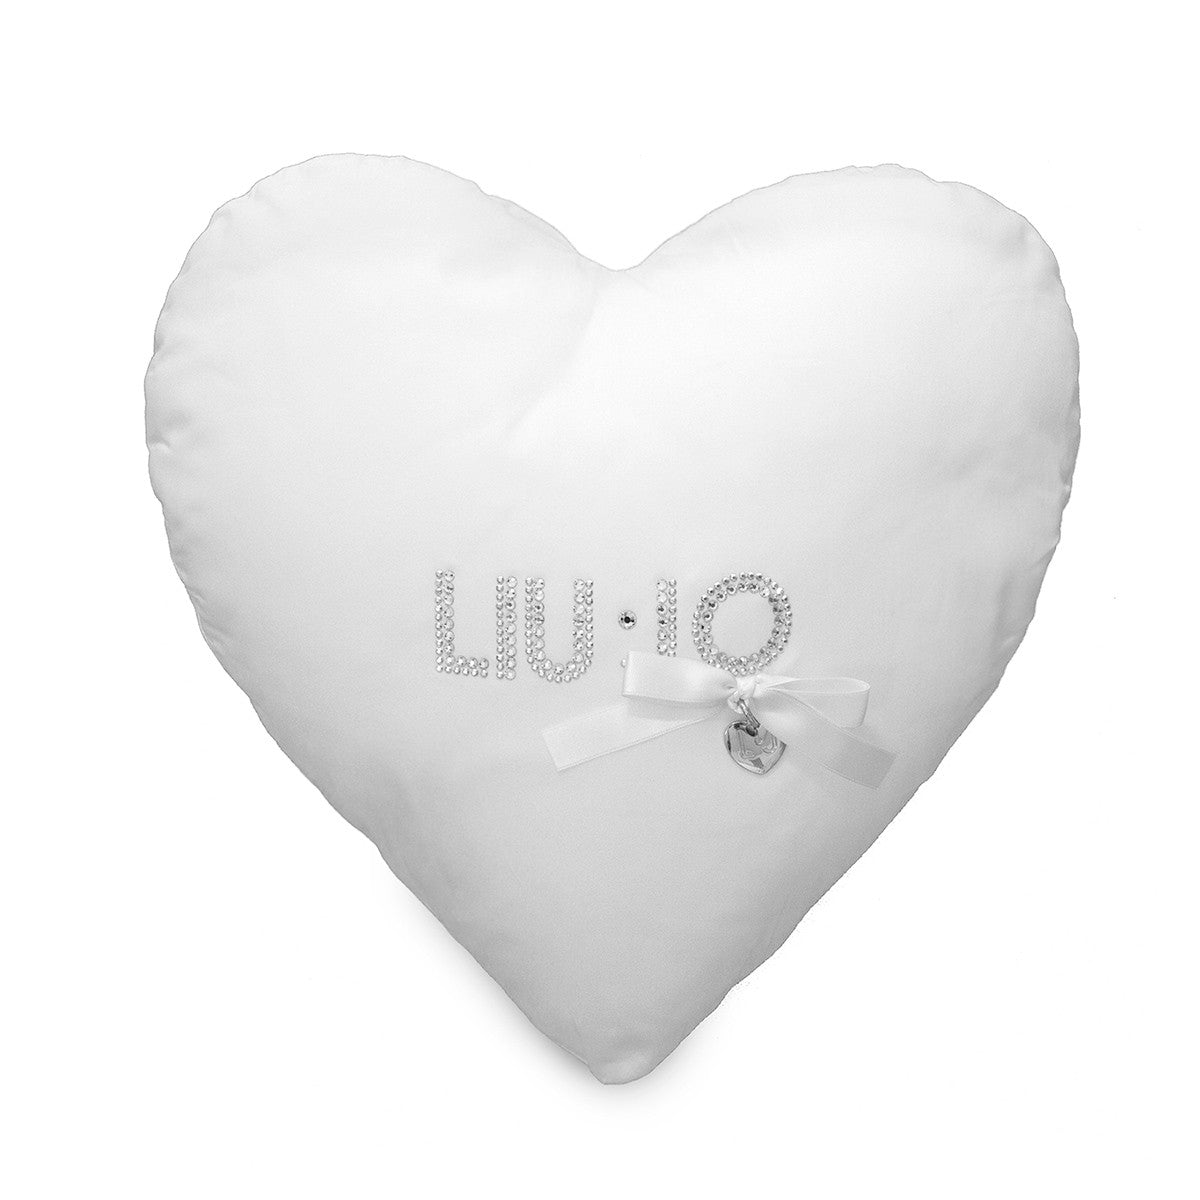 Heart shape cushions LIUJO BIANCO 